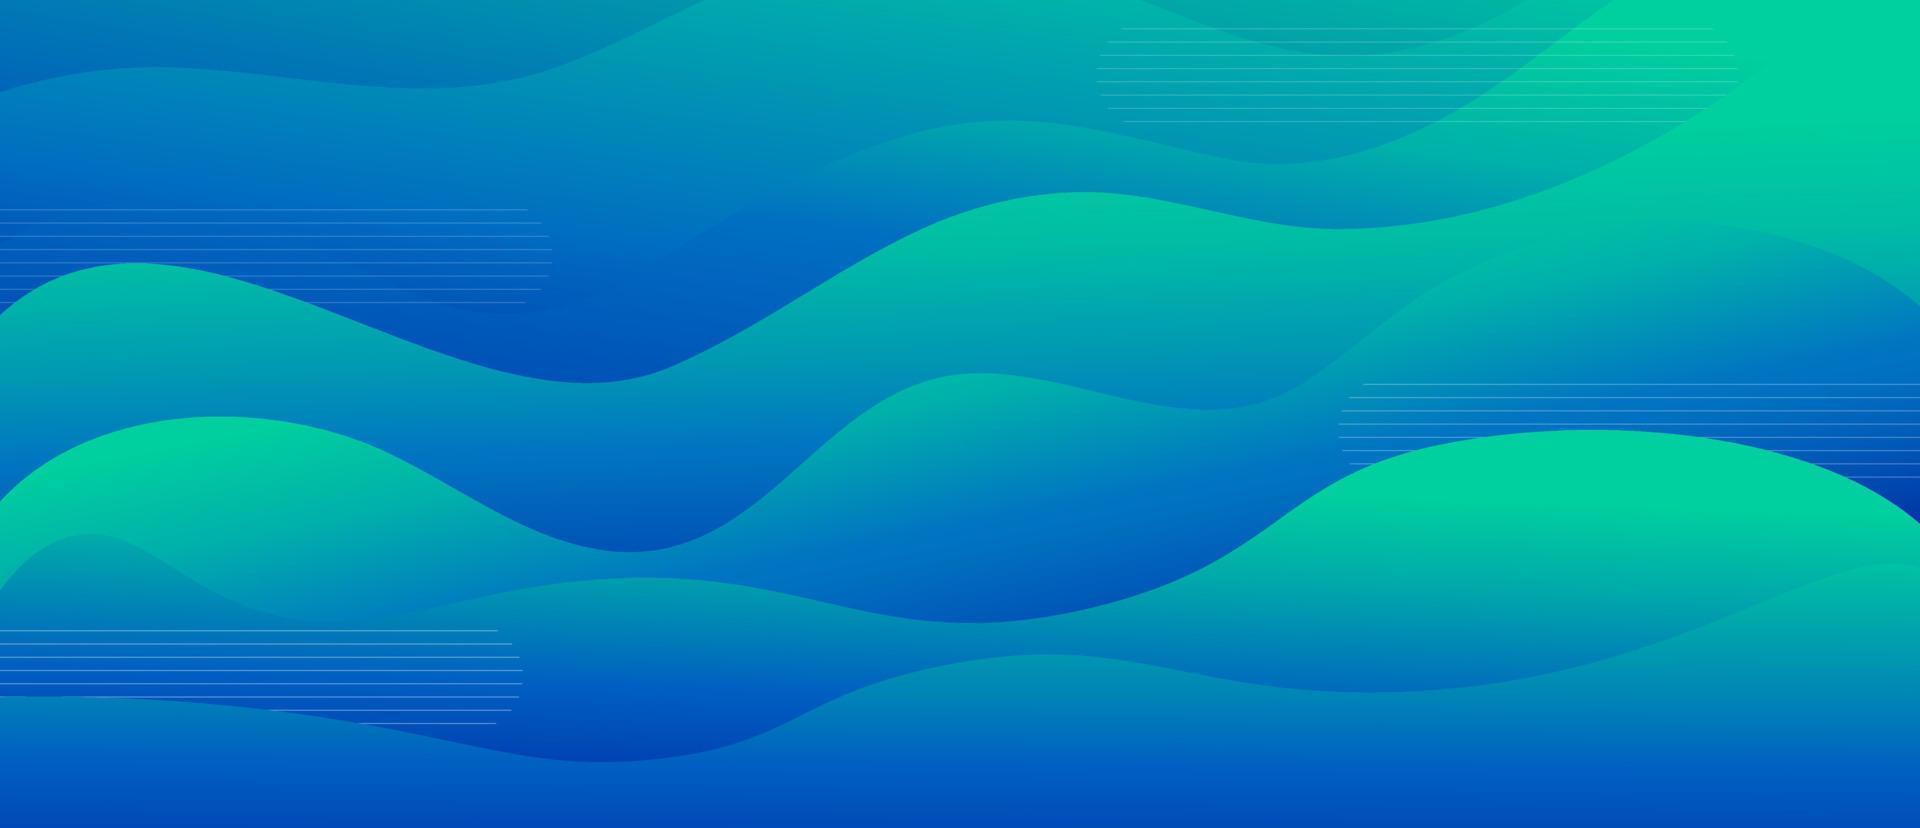 dégradé de fluide dynamique abstrait vague bleue et verte colorée avec illustration graphique vectorielle de ligne. conception décorative de flux de surface marine lumineuse futuriste vecteur